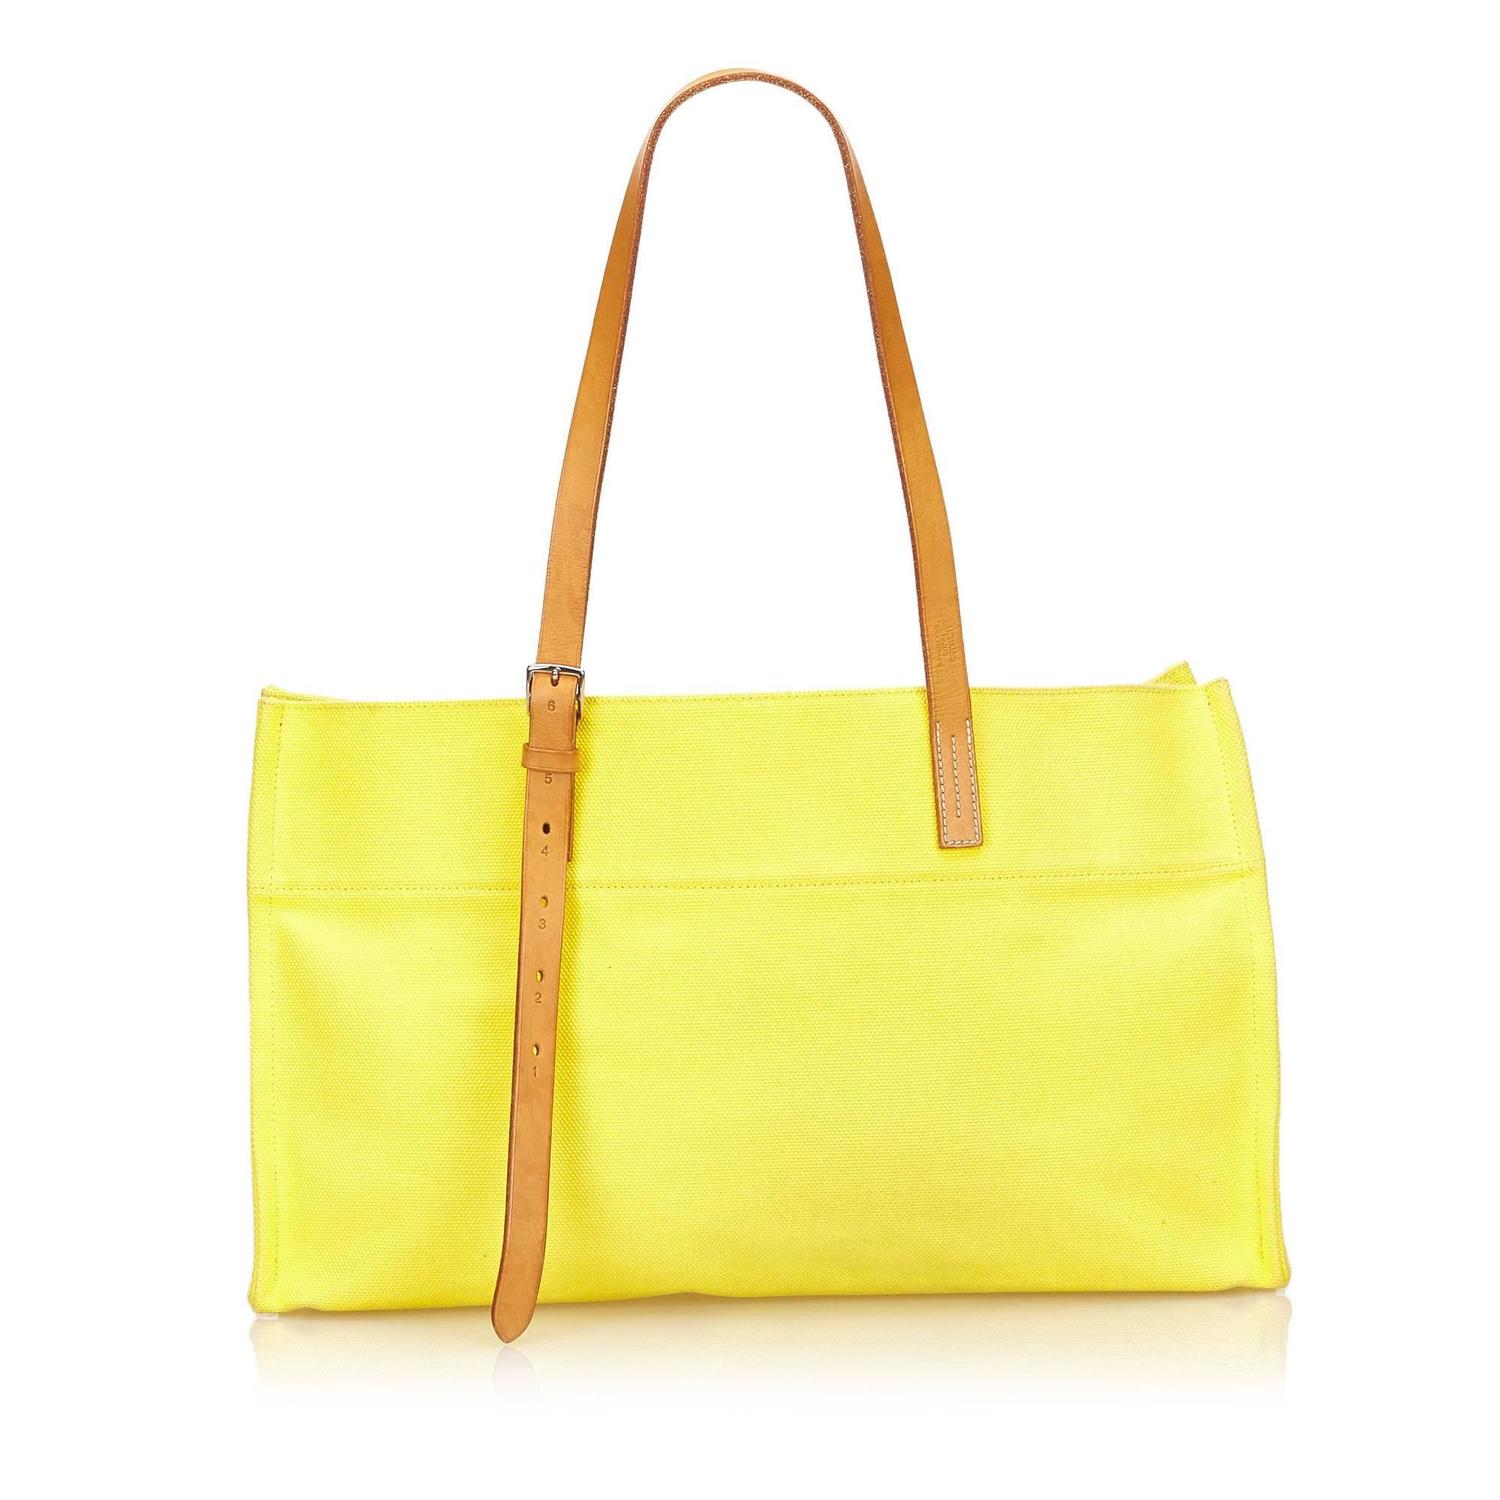 Hermes Yellow Etriviere Elan Shoulder Bag For Sale at 1stdibs